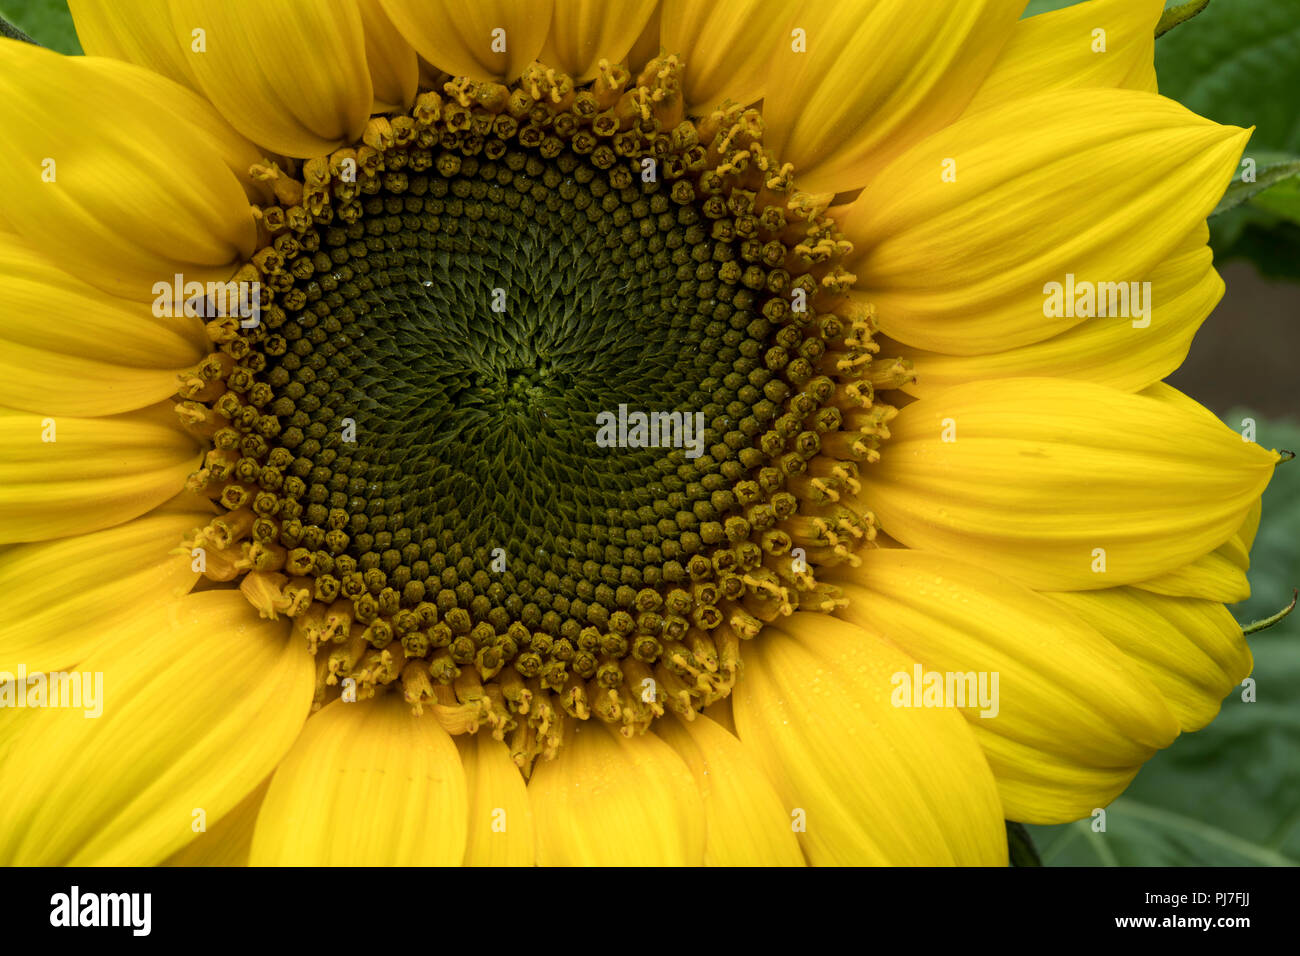 Sunflower; Detail of Centre; UK Stock Photo